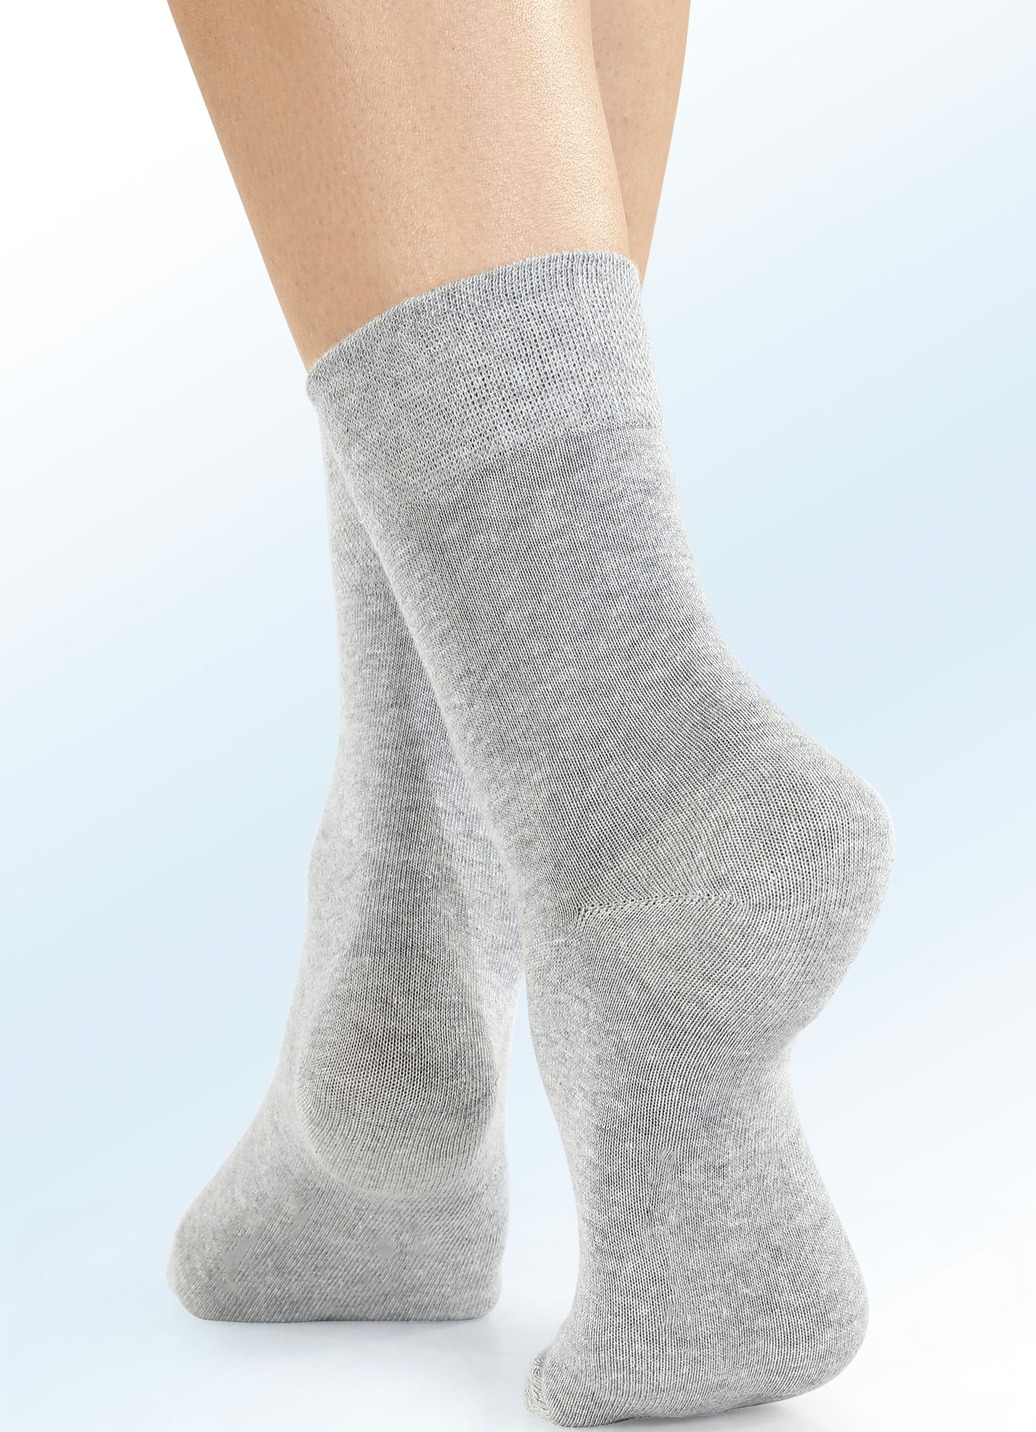 Viererpack Socken mit BIO-Baumwolle, 2X Silbergrau Meliert, 2X Anthrazit Meliert, Größe 2 (Schuhgr. 39-42) von BADER